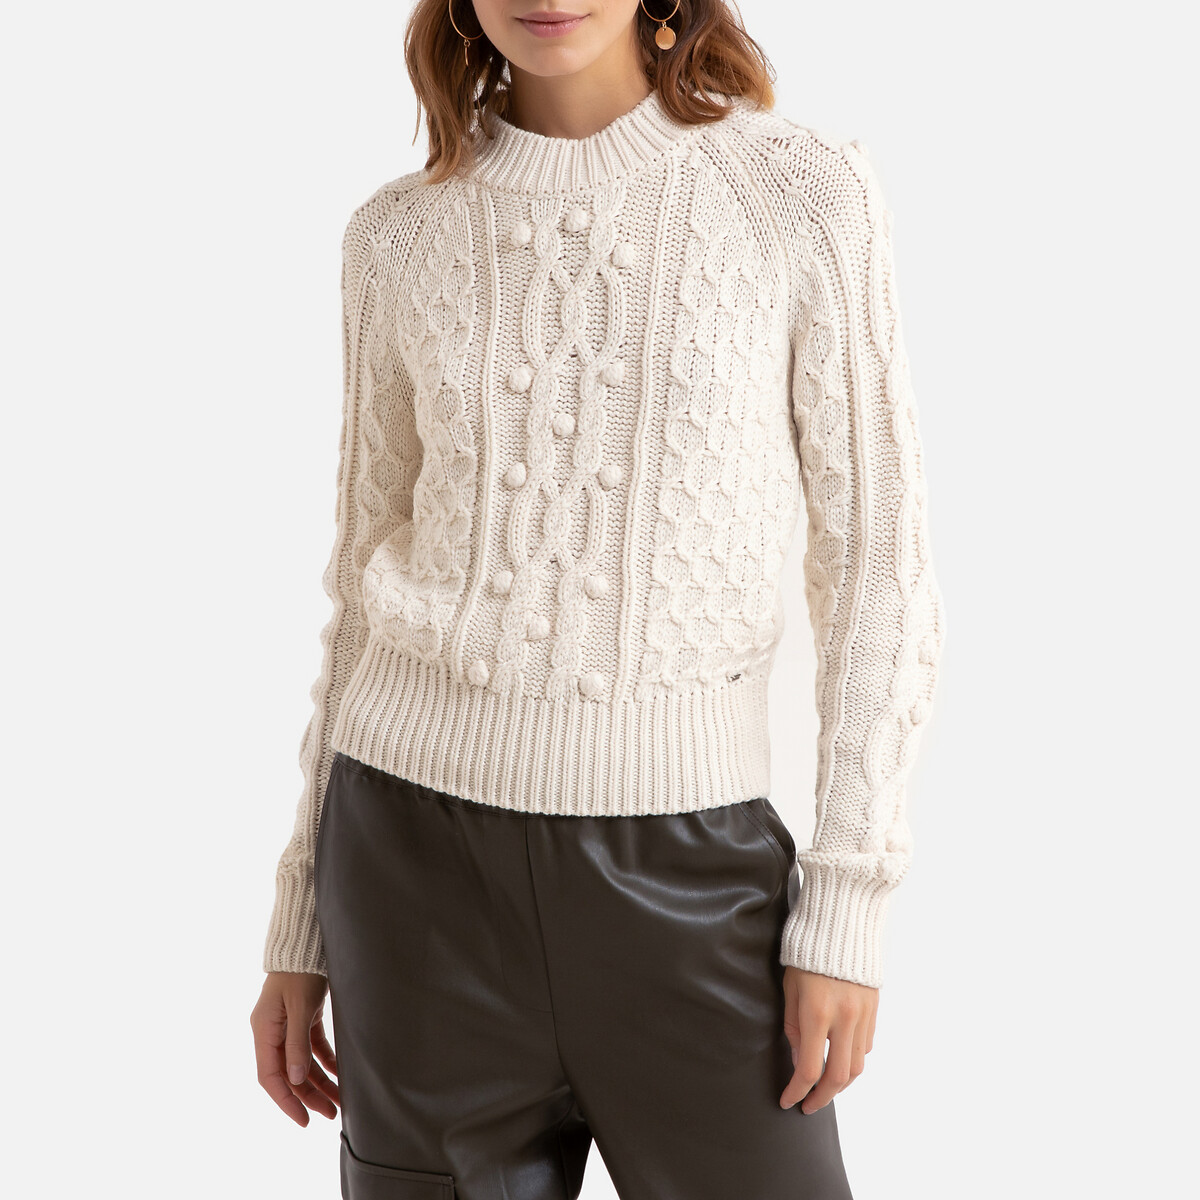 Пуловер La Redoute Из плотного трикотажа круглый вырез S белый, размер S - фото 1